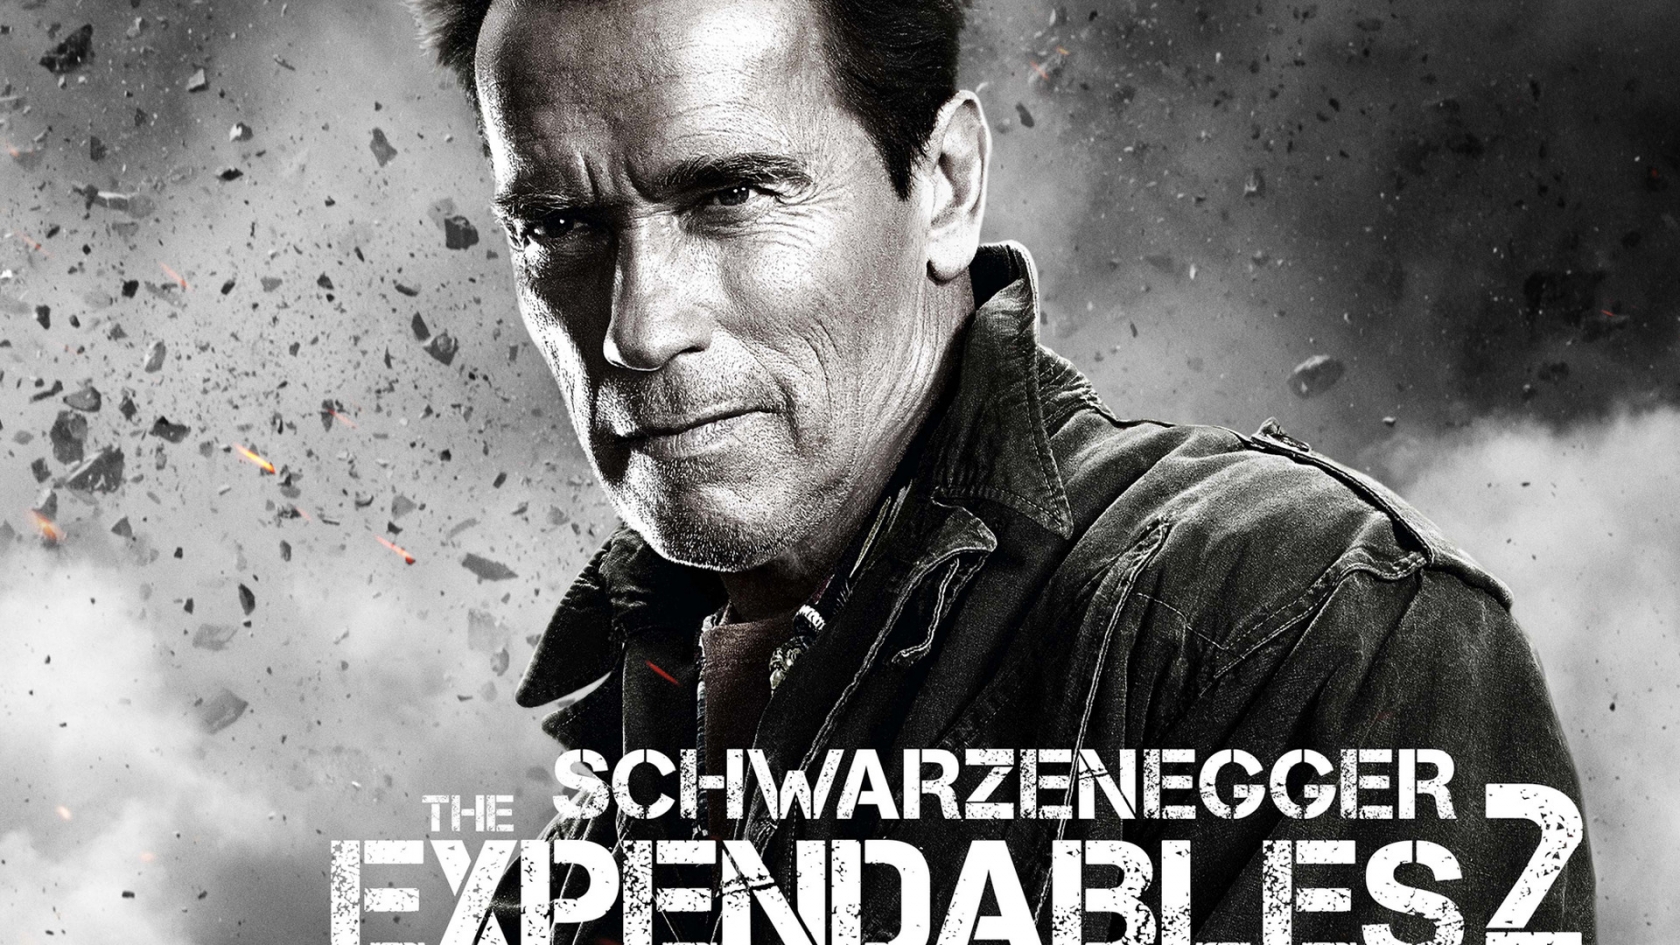 Arnold Schwarzenegger Expendables 2 for 1680 x 945 HDTV resolution